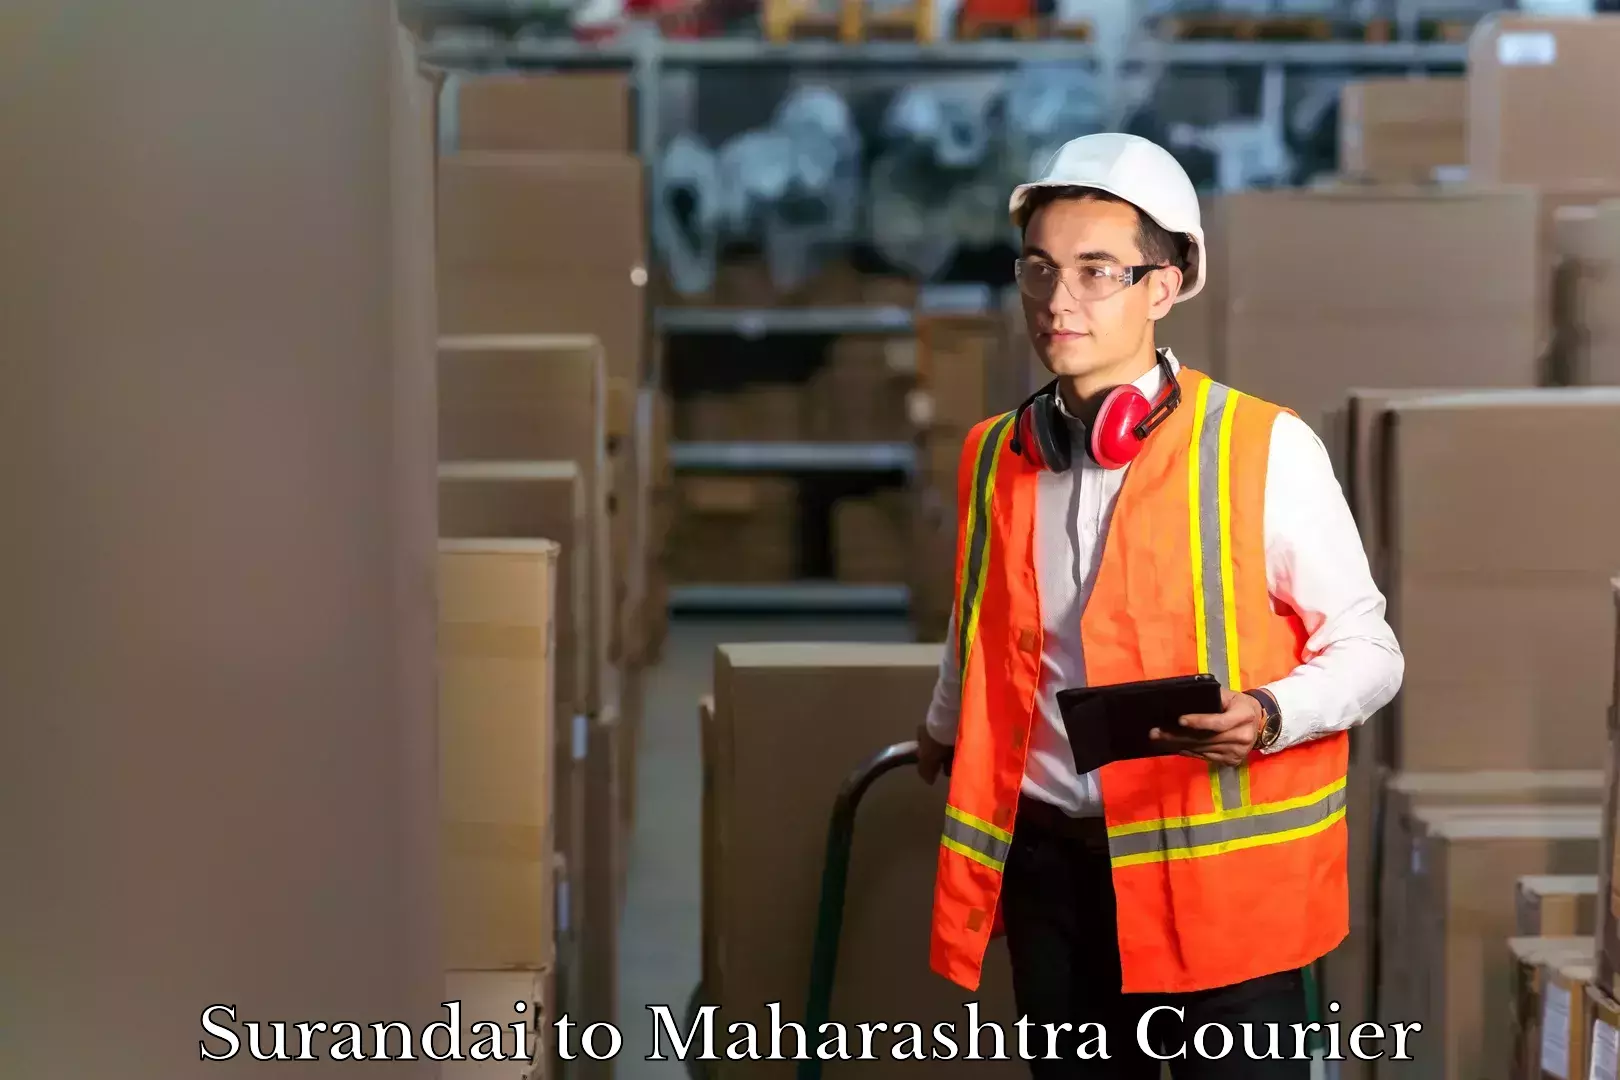 Baggage shipping service Surandai to Maharashtra